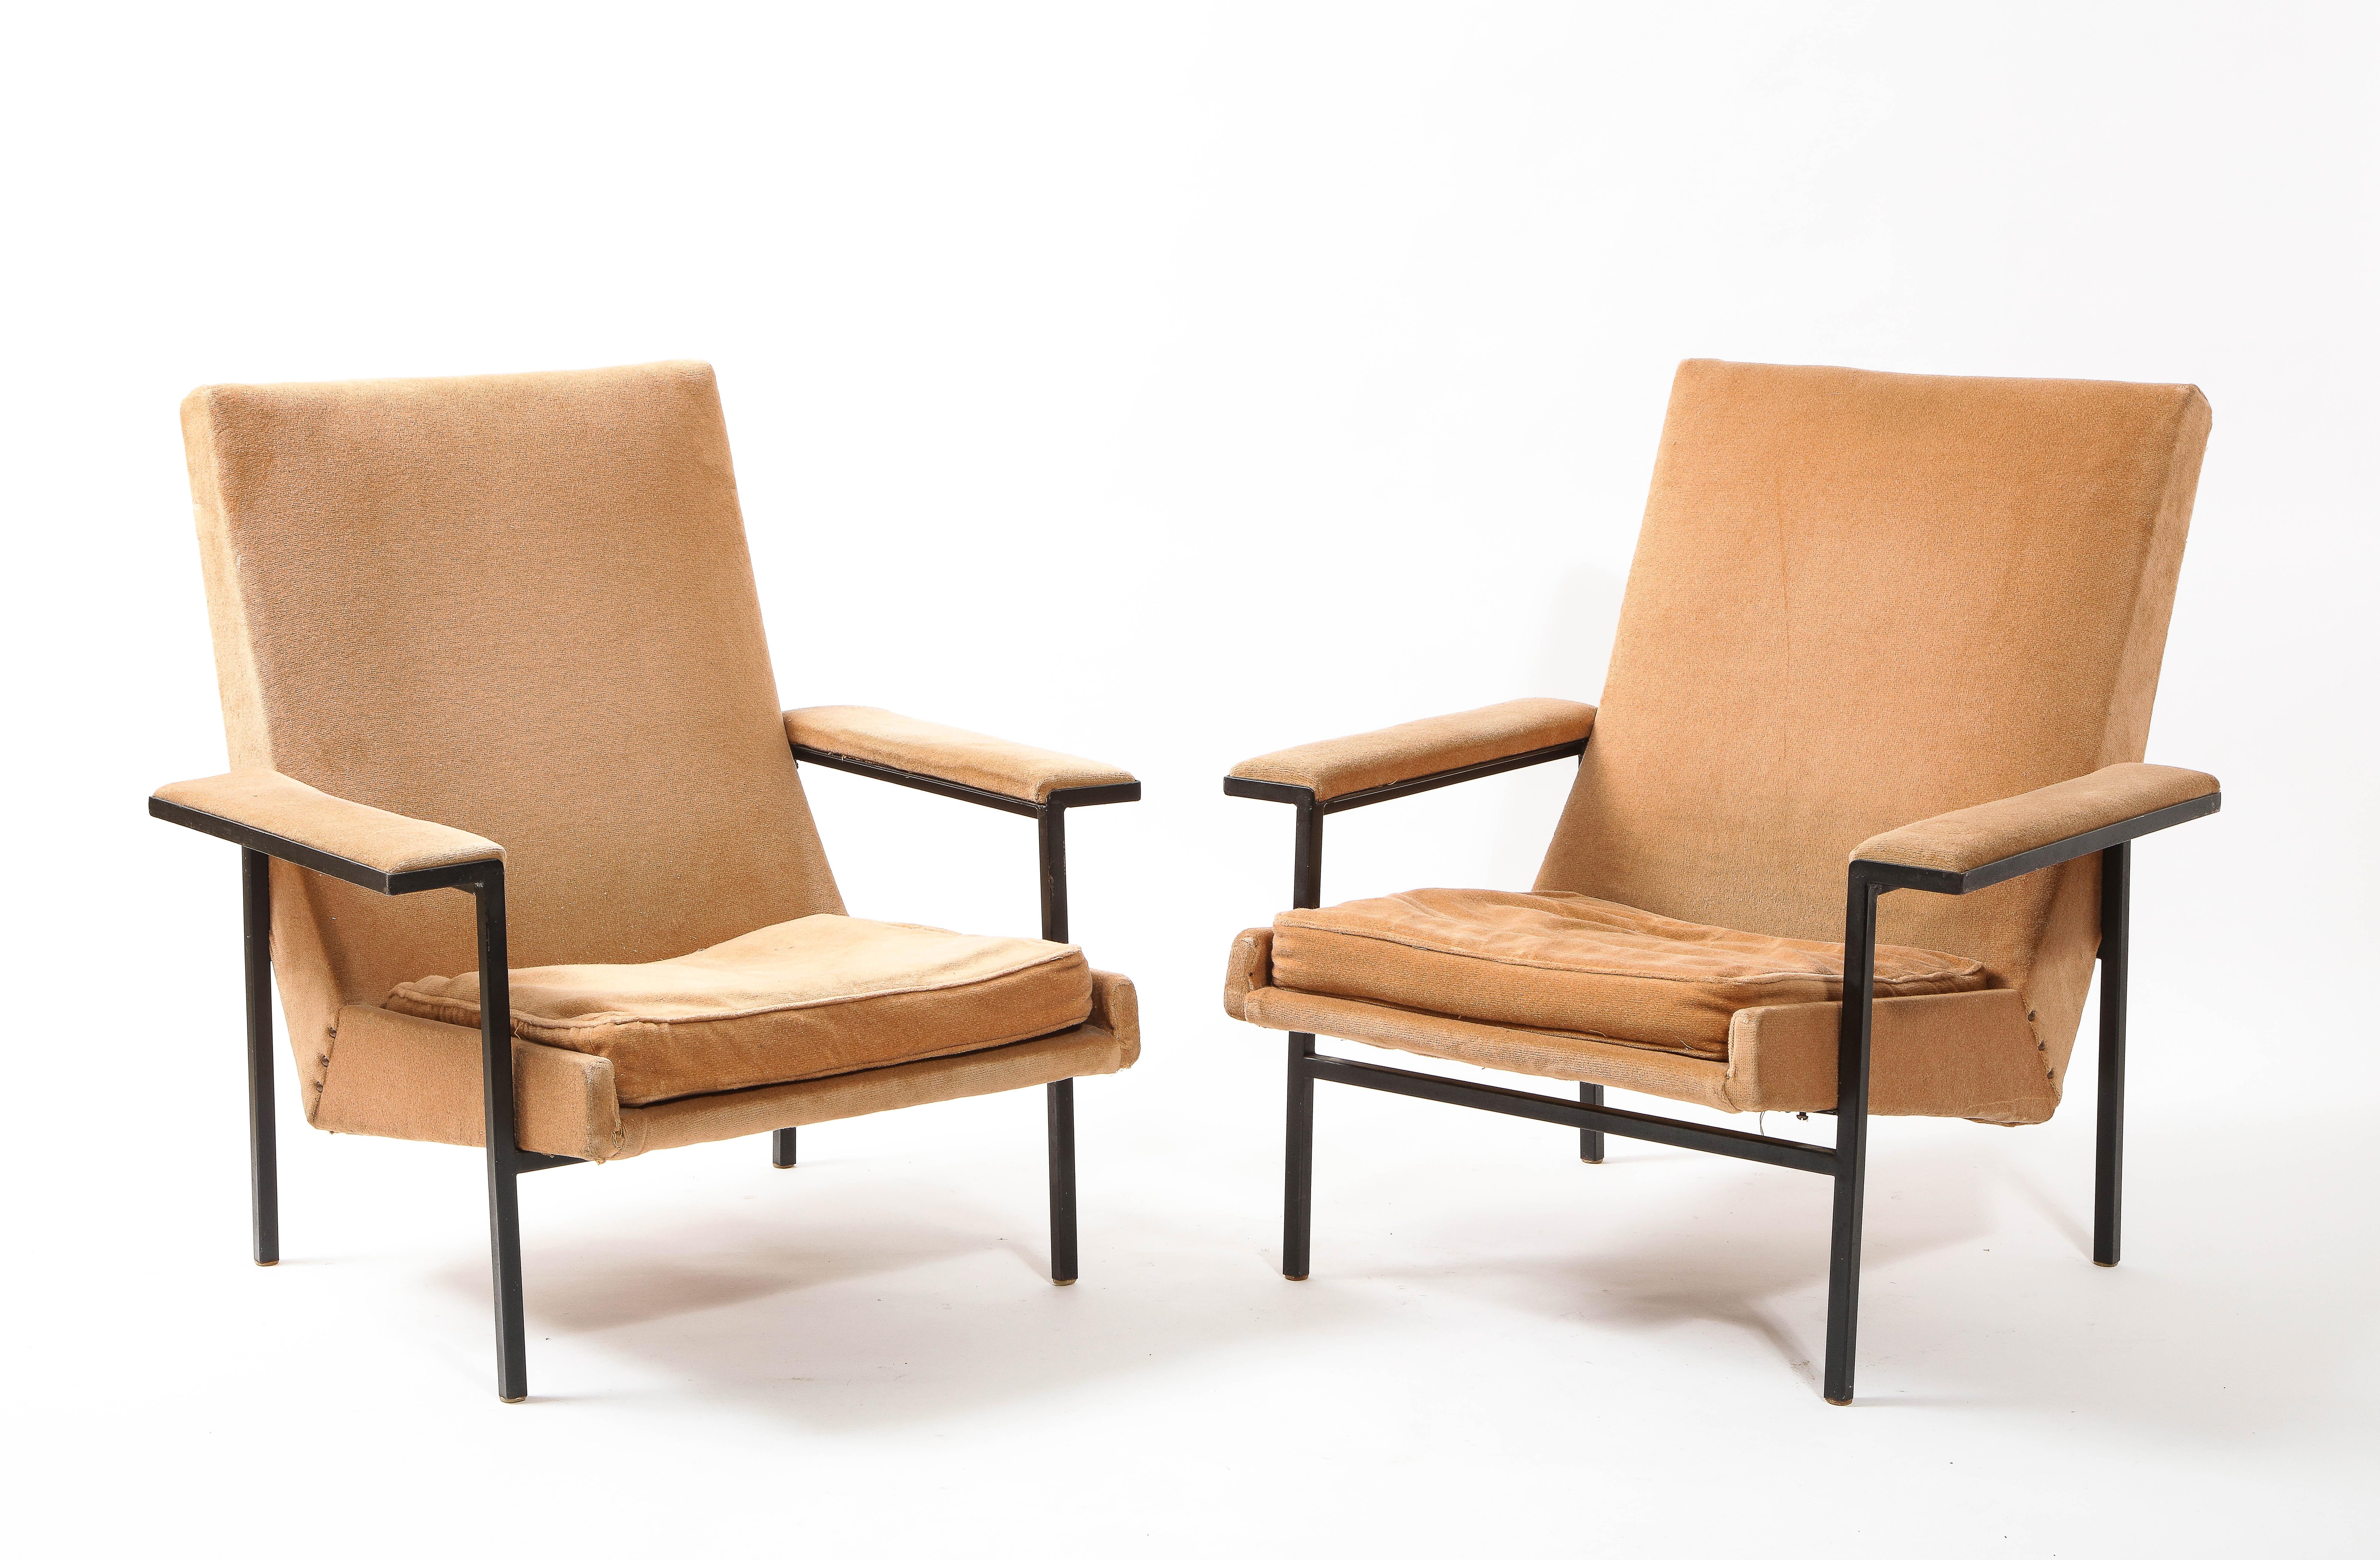 Ein seltenes Paar Sessel, entworfen vom Studio A.R.P, das 1950 von Pierre Guariche zusammen mit Motte und Mortier gegründet wurde. Ein lackierter Stahlsockel aus Vierkantrohr trägt eine gepolsterte Sitzfläche, die auch bei anderen Versionen dieses